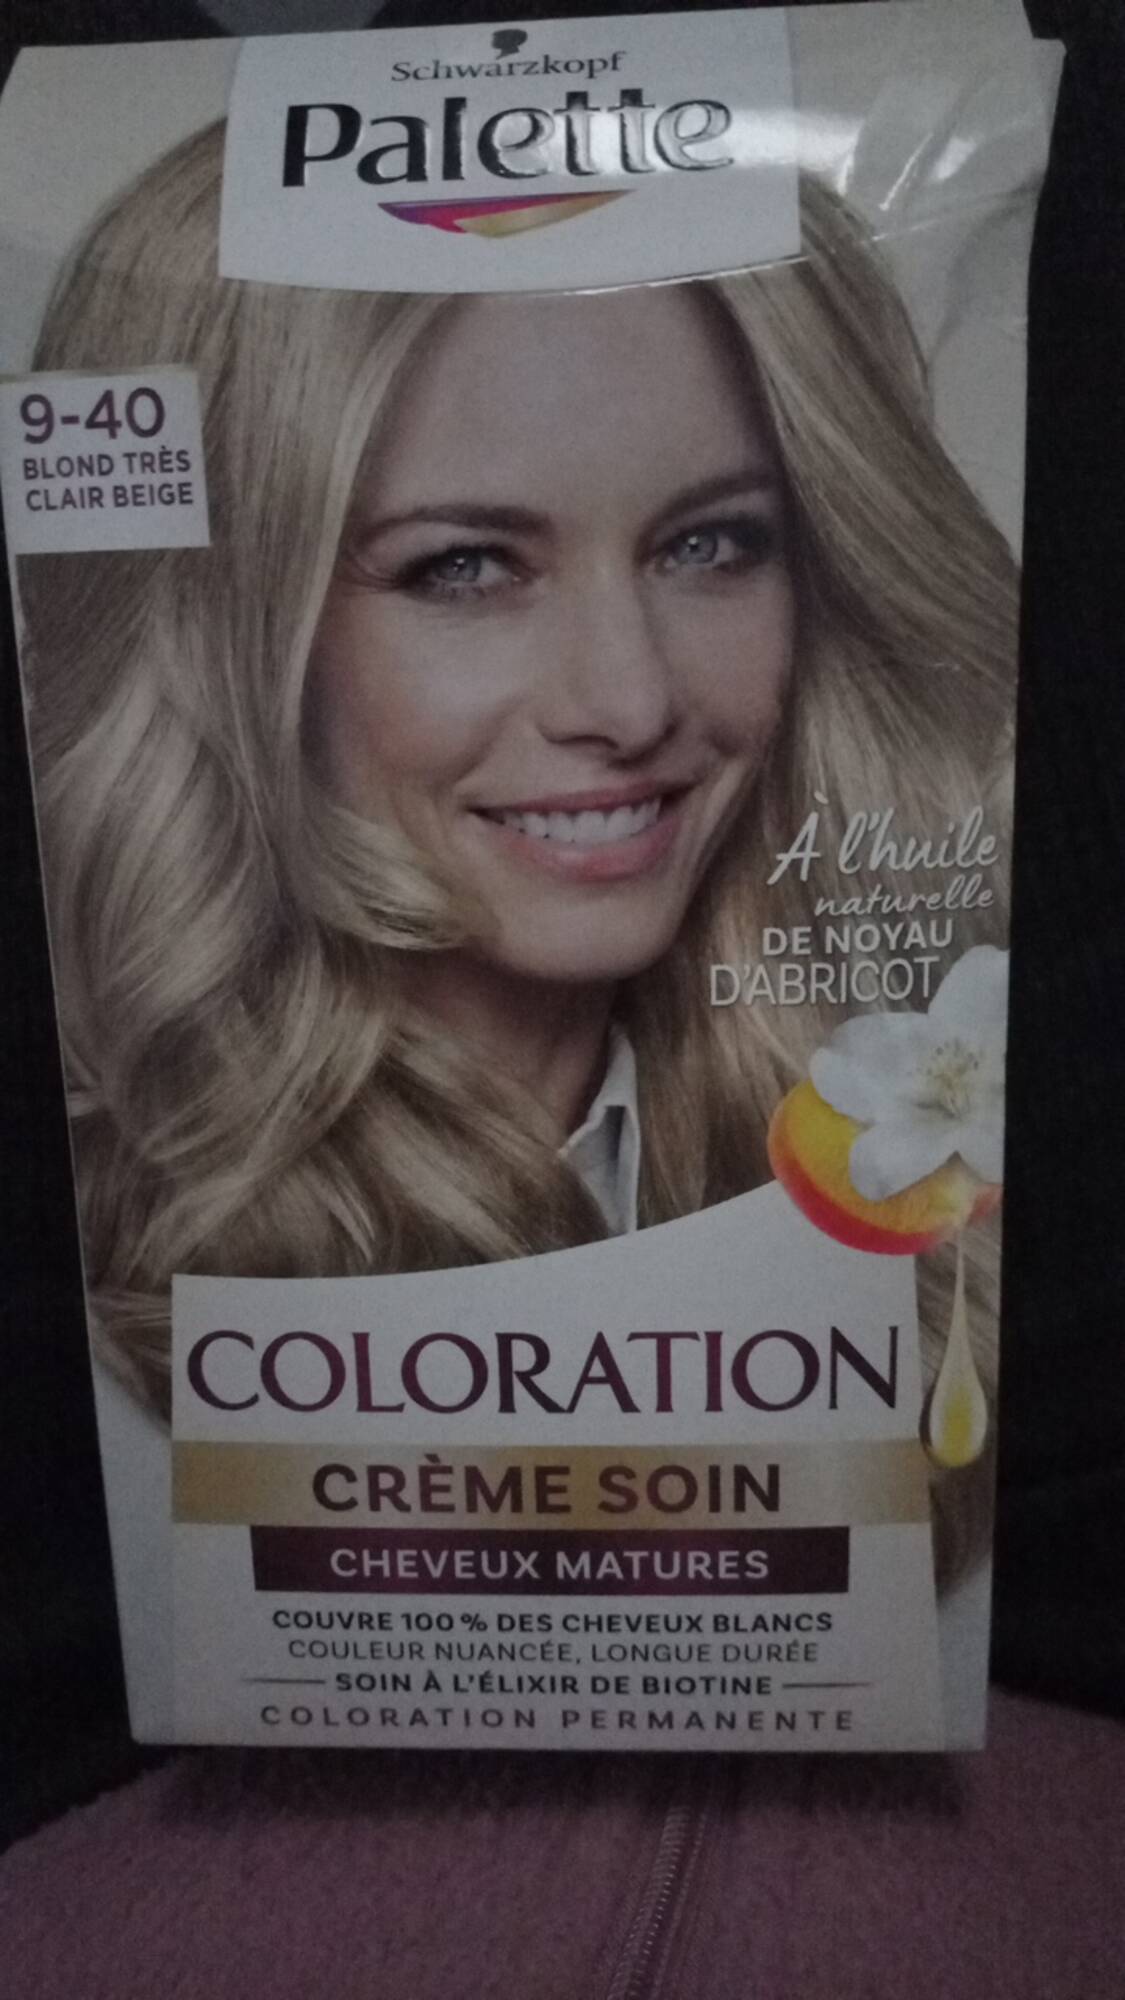 PALETTE - Cheveux matures  - Coloration crème soin 9-40 blond très clair beige